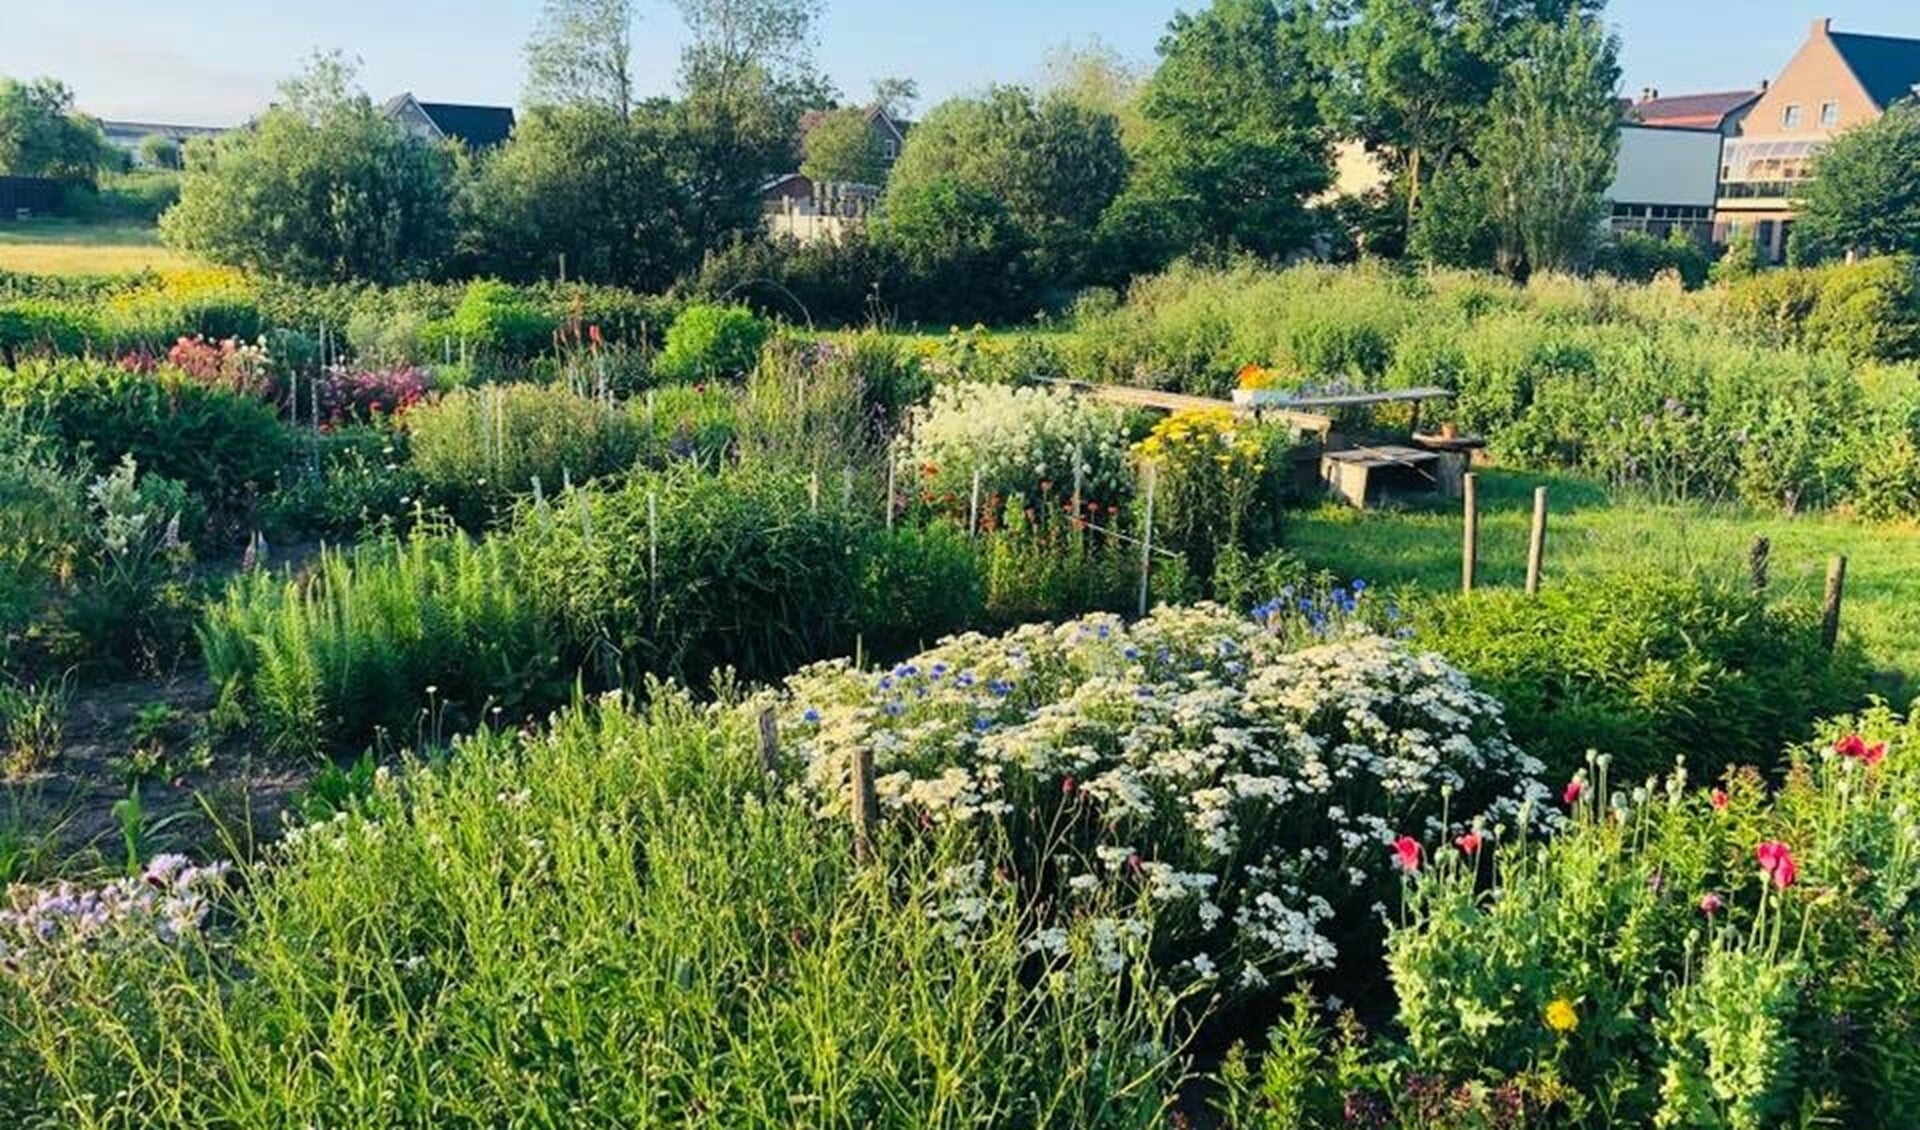  De tuin zal 'dienst' doen als plek waar buurtbewoners vruchten, kruiden en bloemen kunnen plukken. 